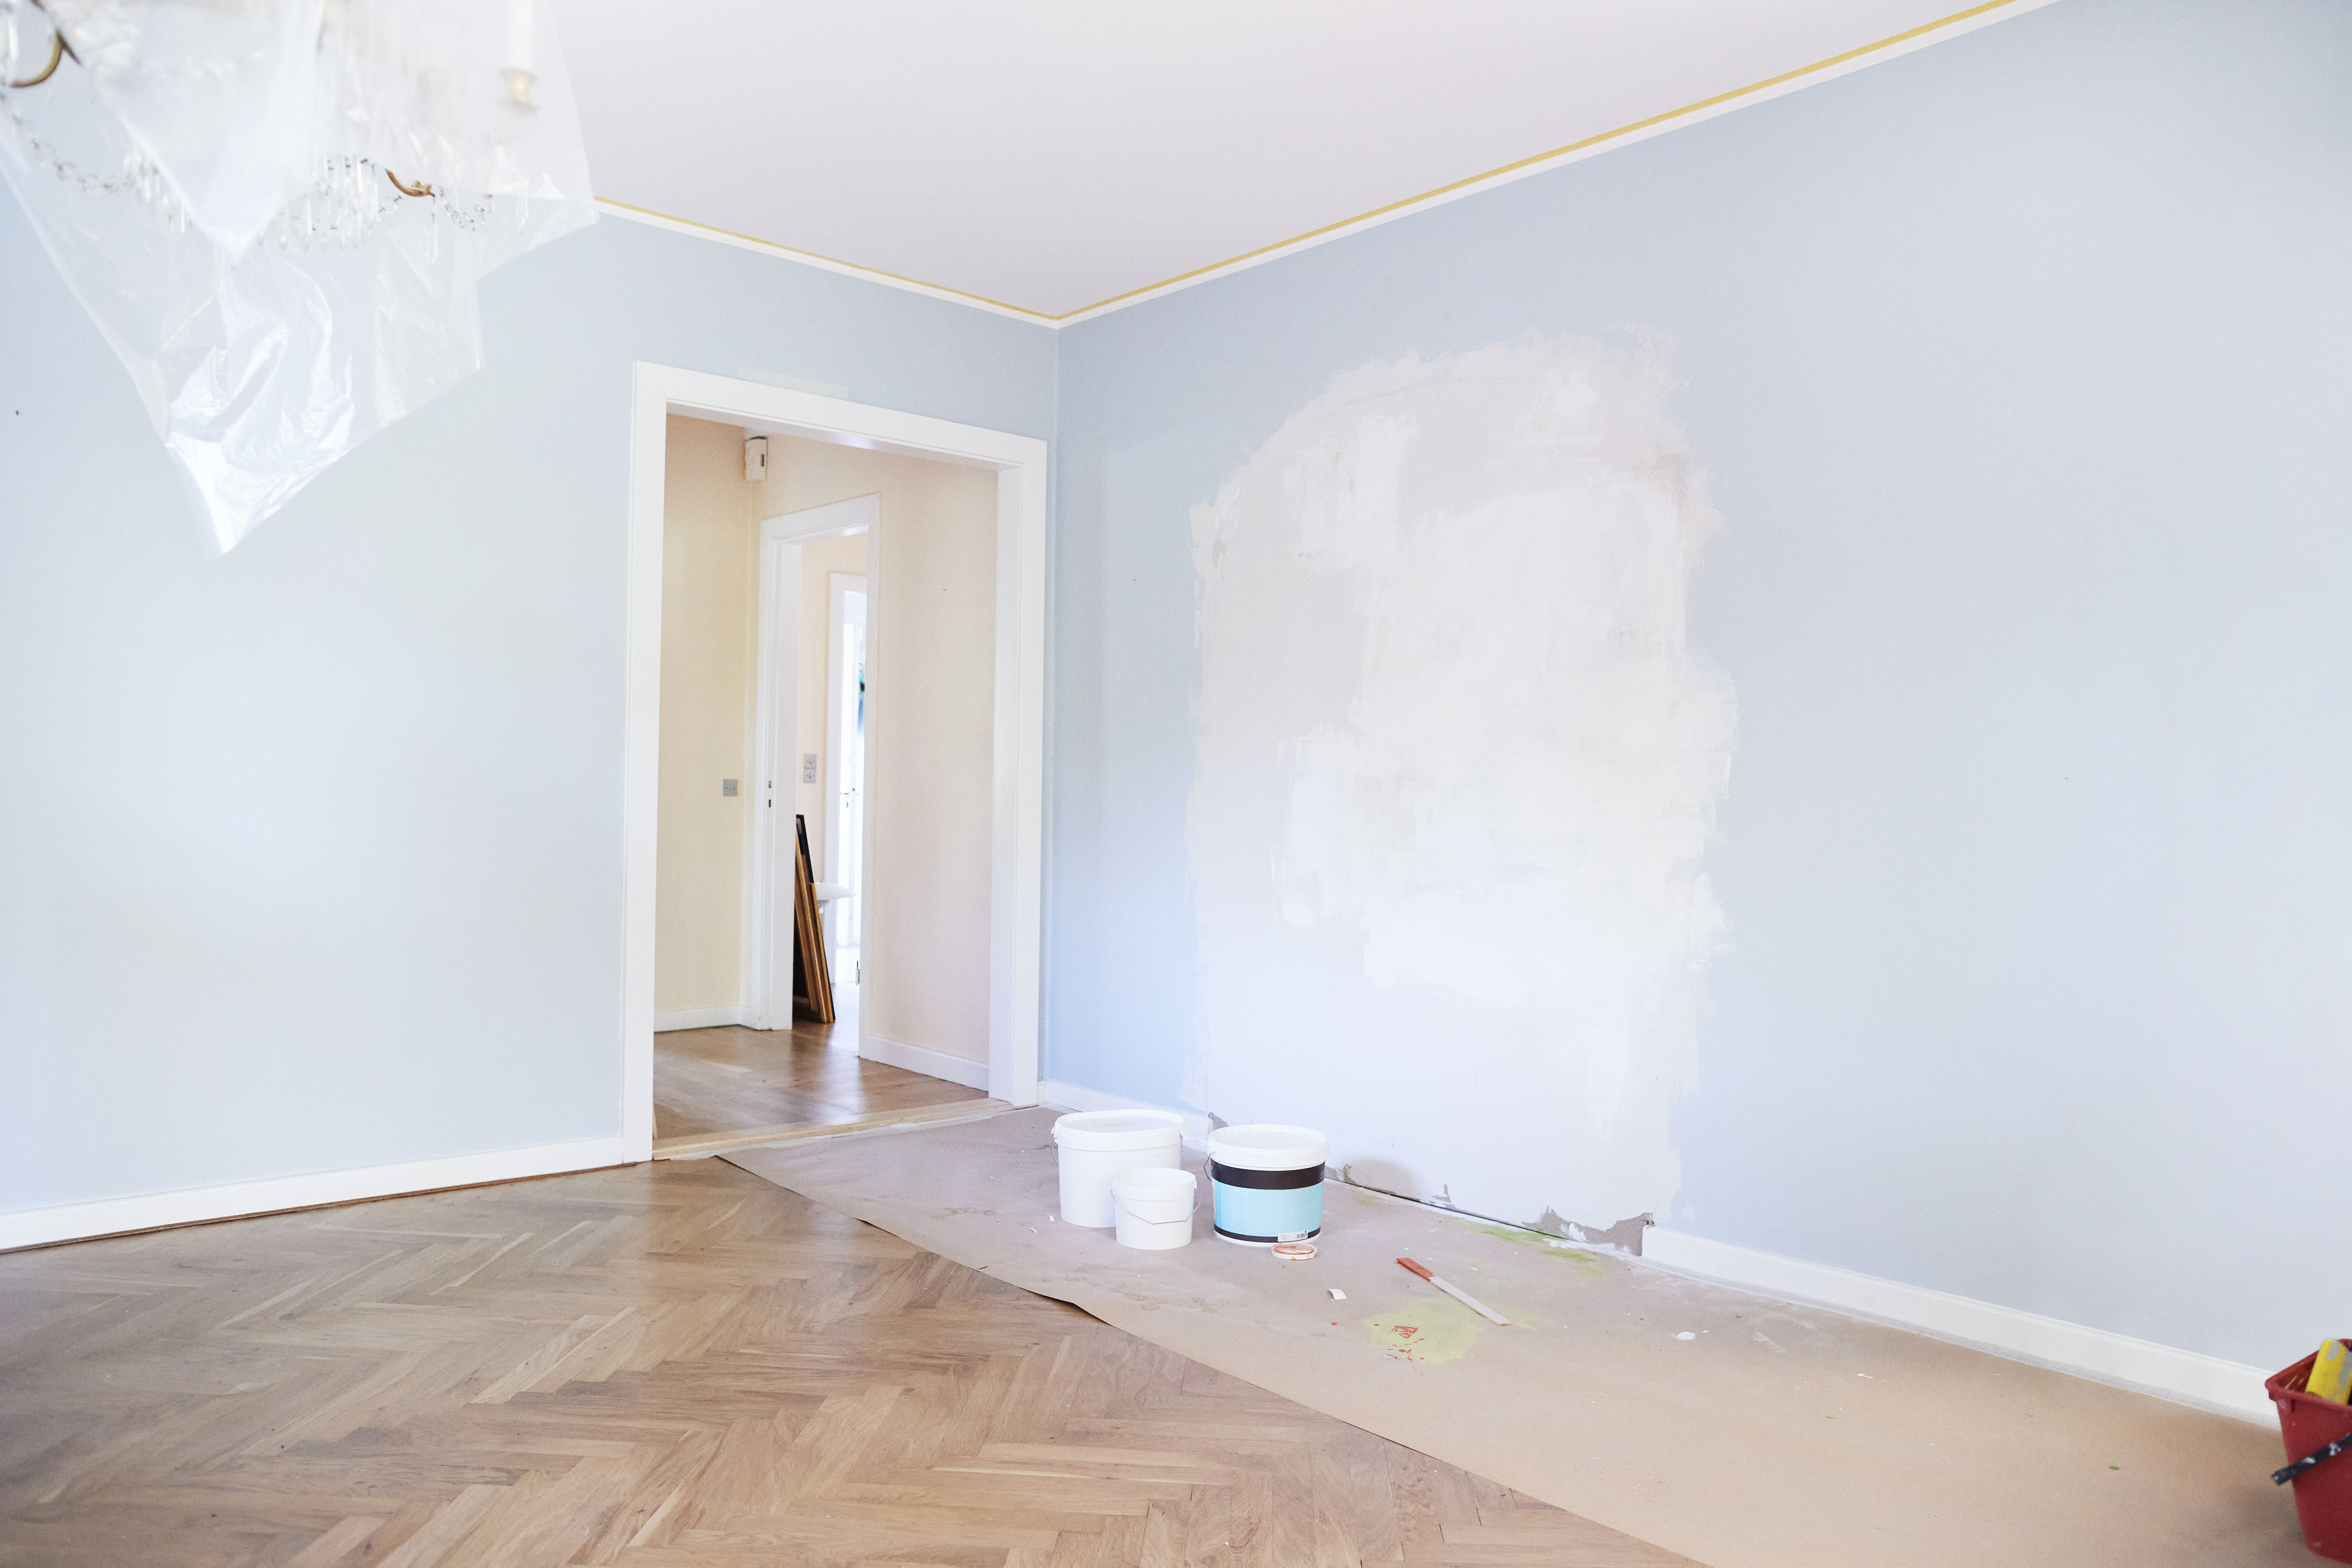 Un salon rénové avec des murs fraîchement peints | Source : Getty Images